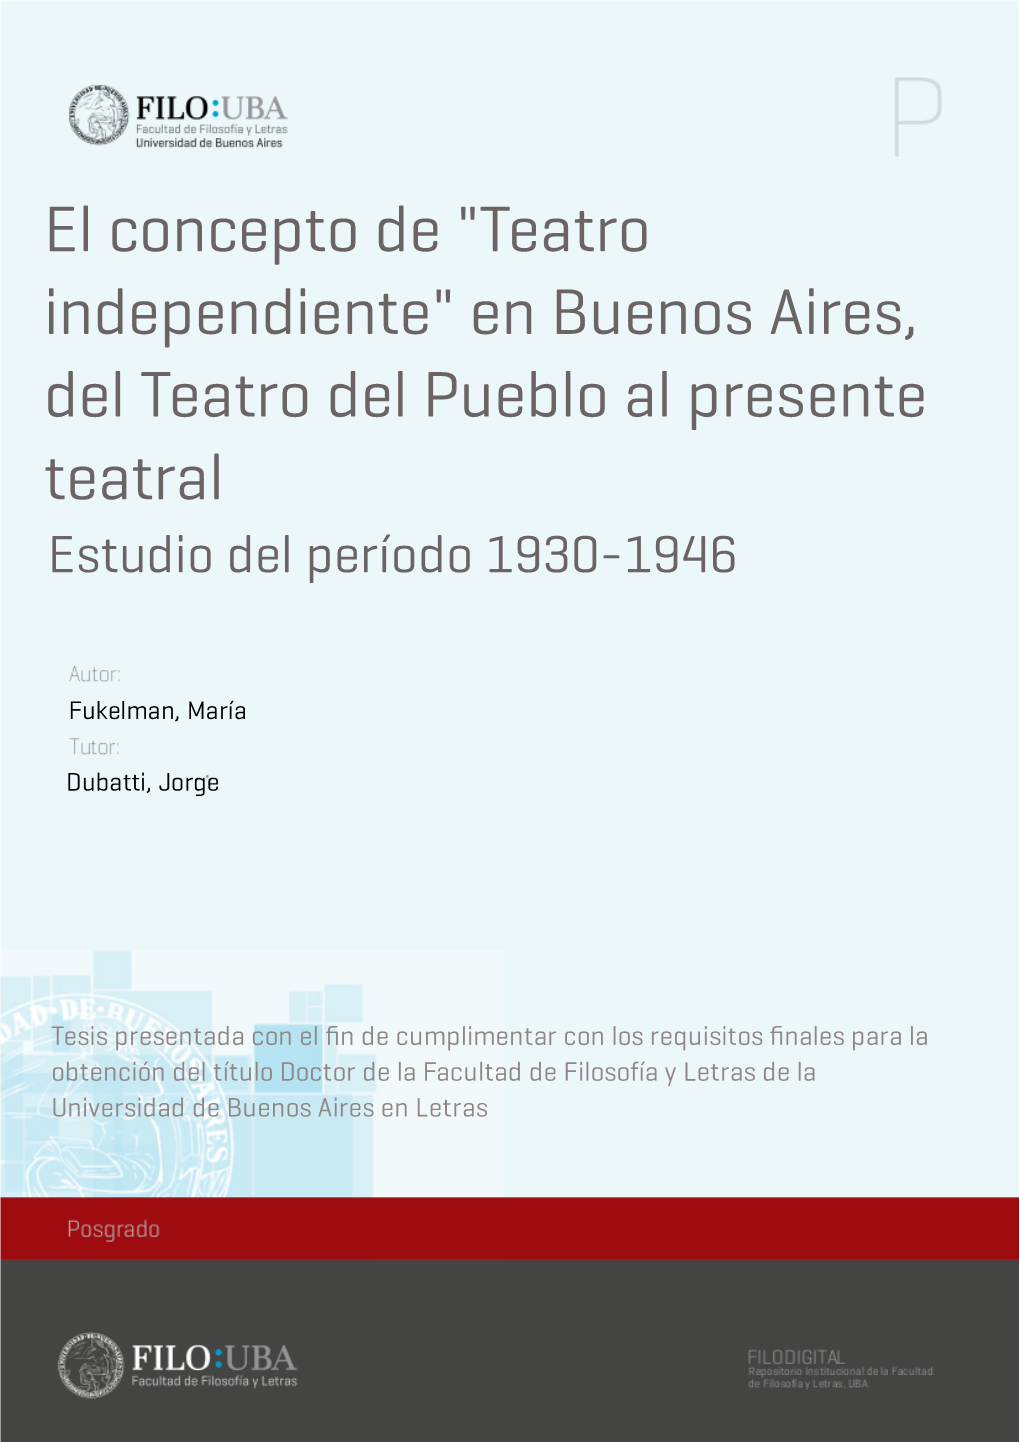 El Concepto De "Teatro Independiente" En Buenos Aires, Del Teatro Del Pueblo Al Presente Teatral Estudio Del Período 1930-1946